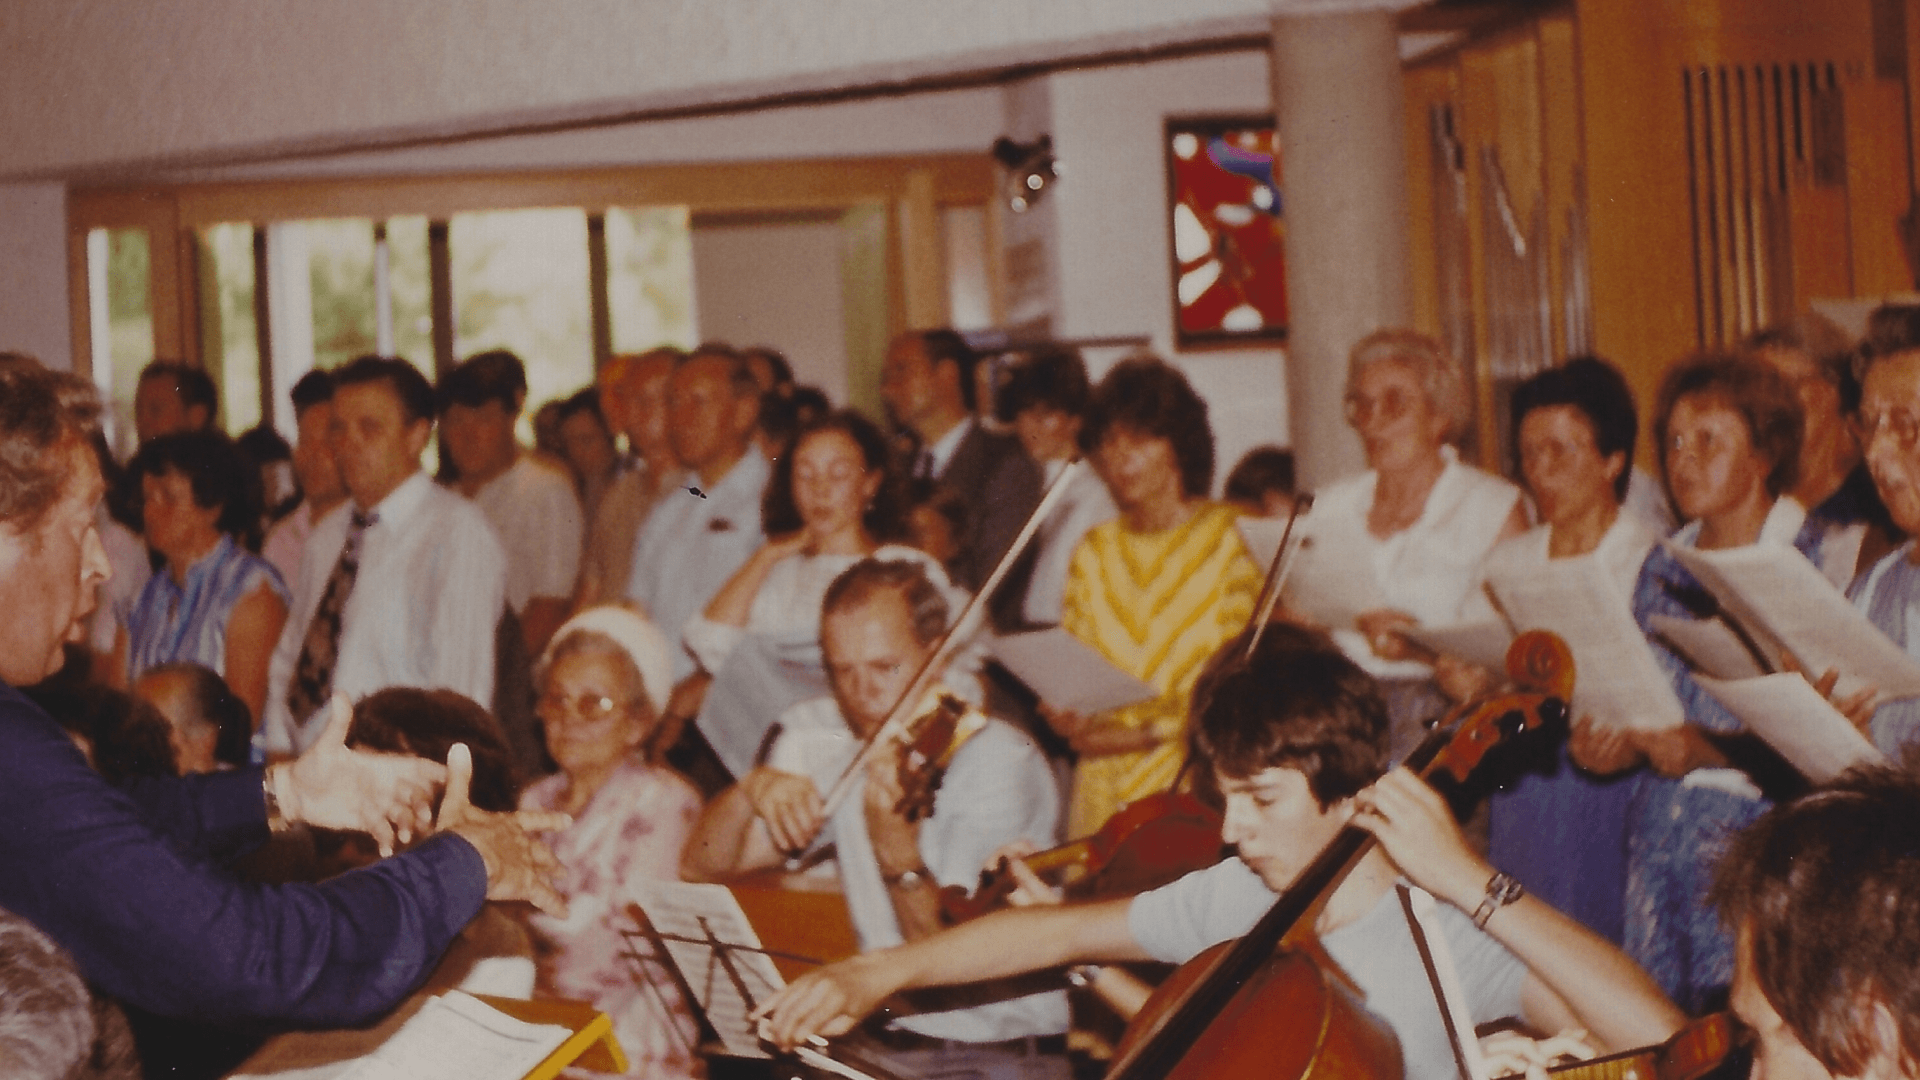 Der Kirchenchor Schwaikheim sorgt für den festl. Gesang Christi Himmelfahrt 1983- Foto: Archiv Arme Schulschwestern